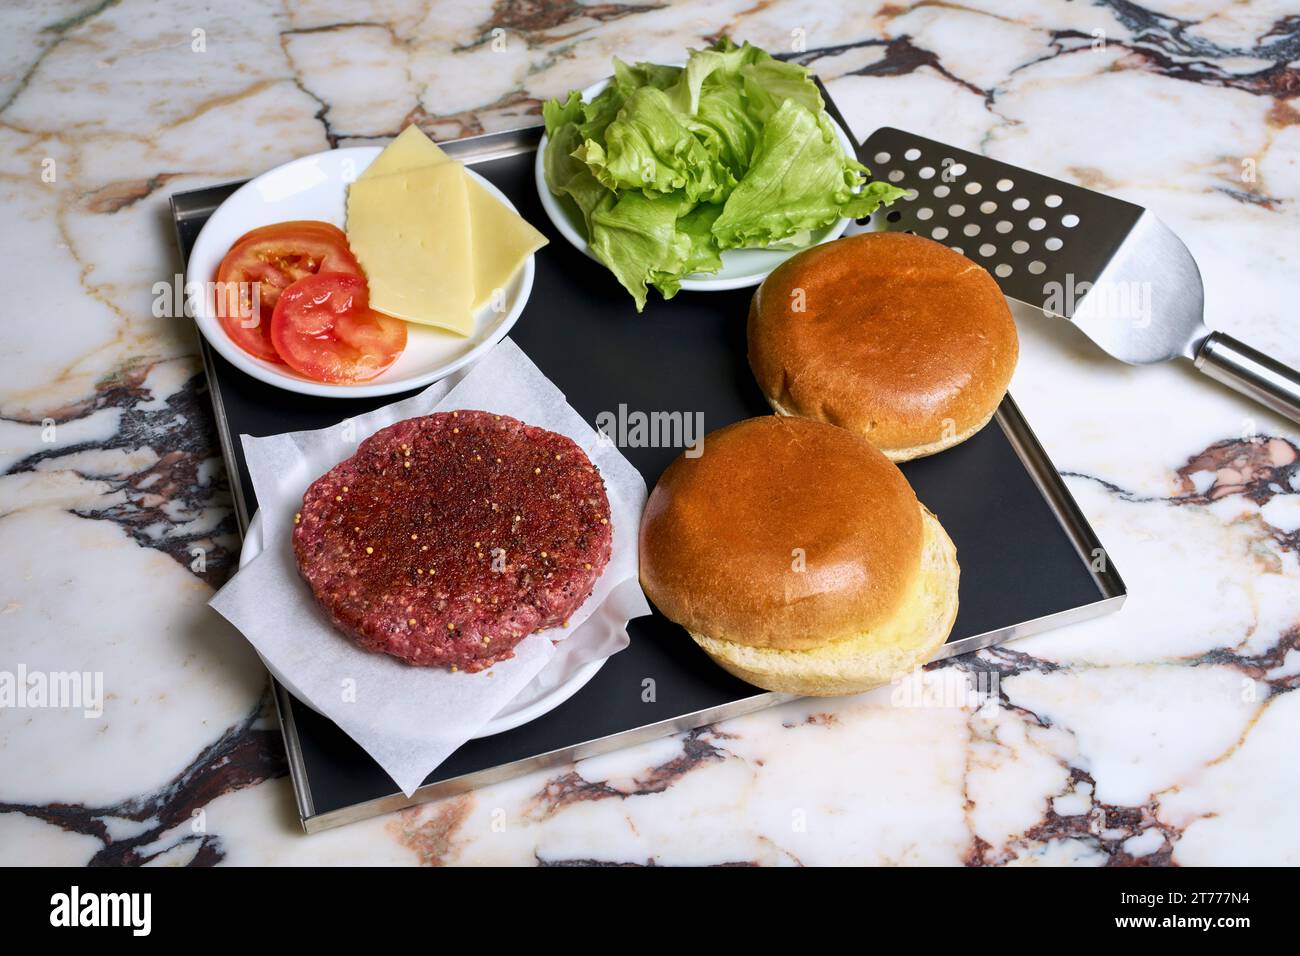 Ingrédients de hamburger nature morte sur plateau Banque D'Images